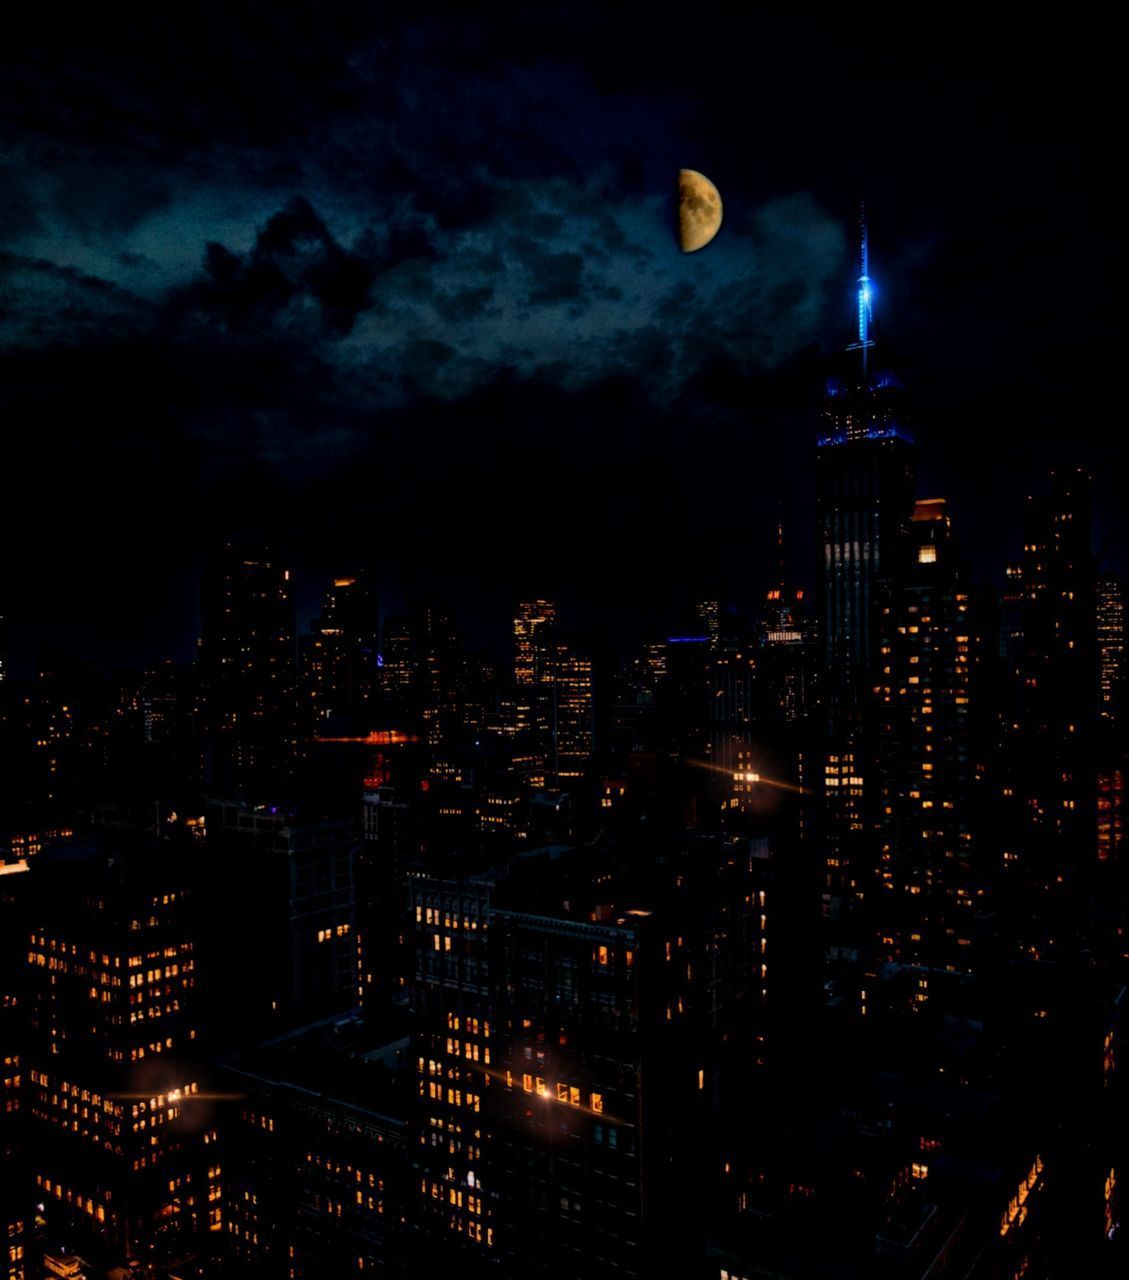 ILLUMINATED CITY AGAINST SKY AT NIGHT